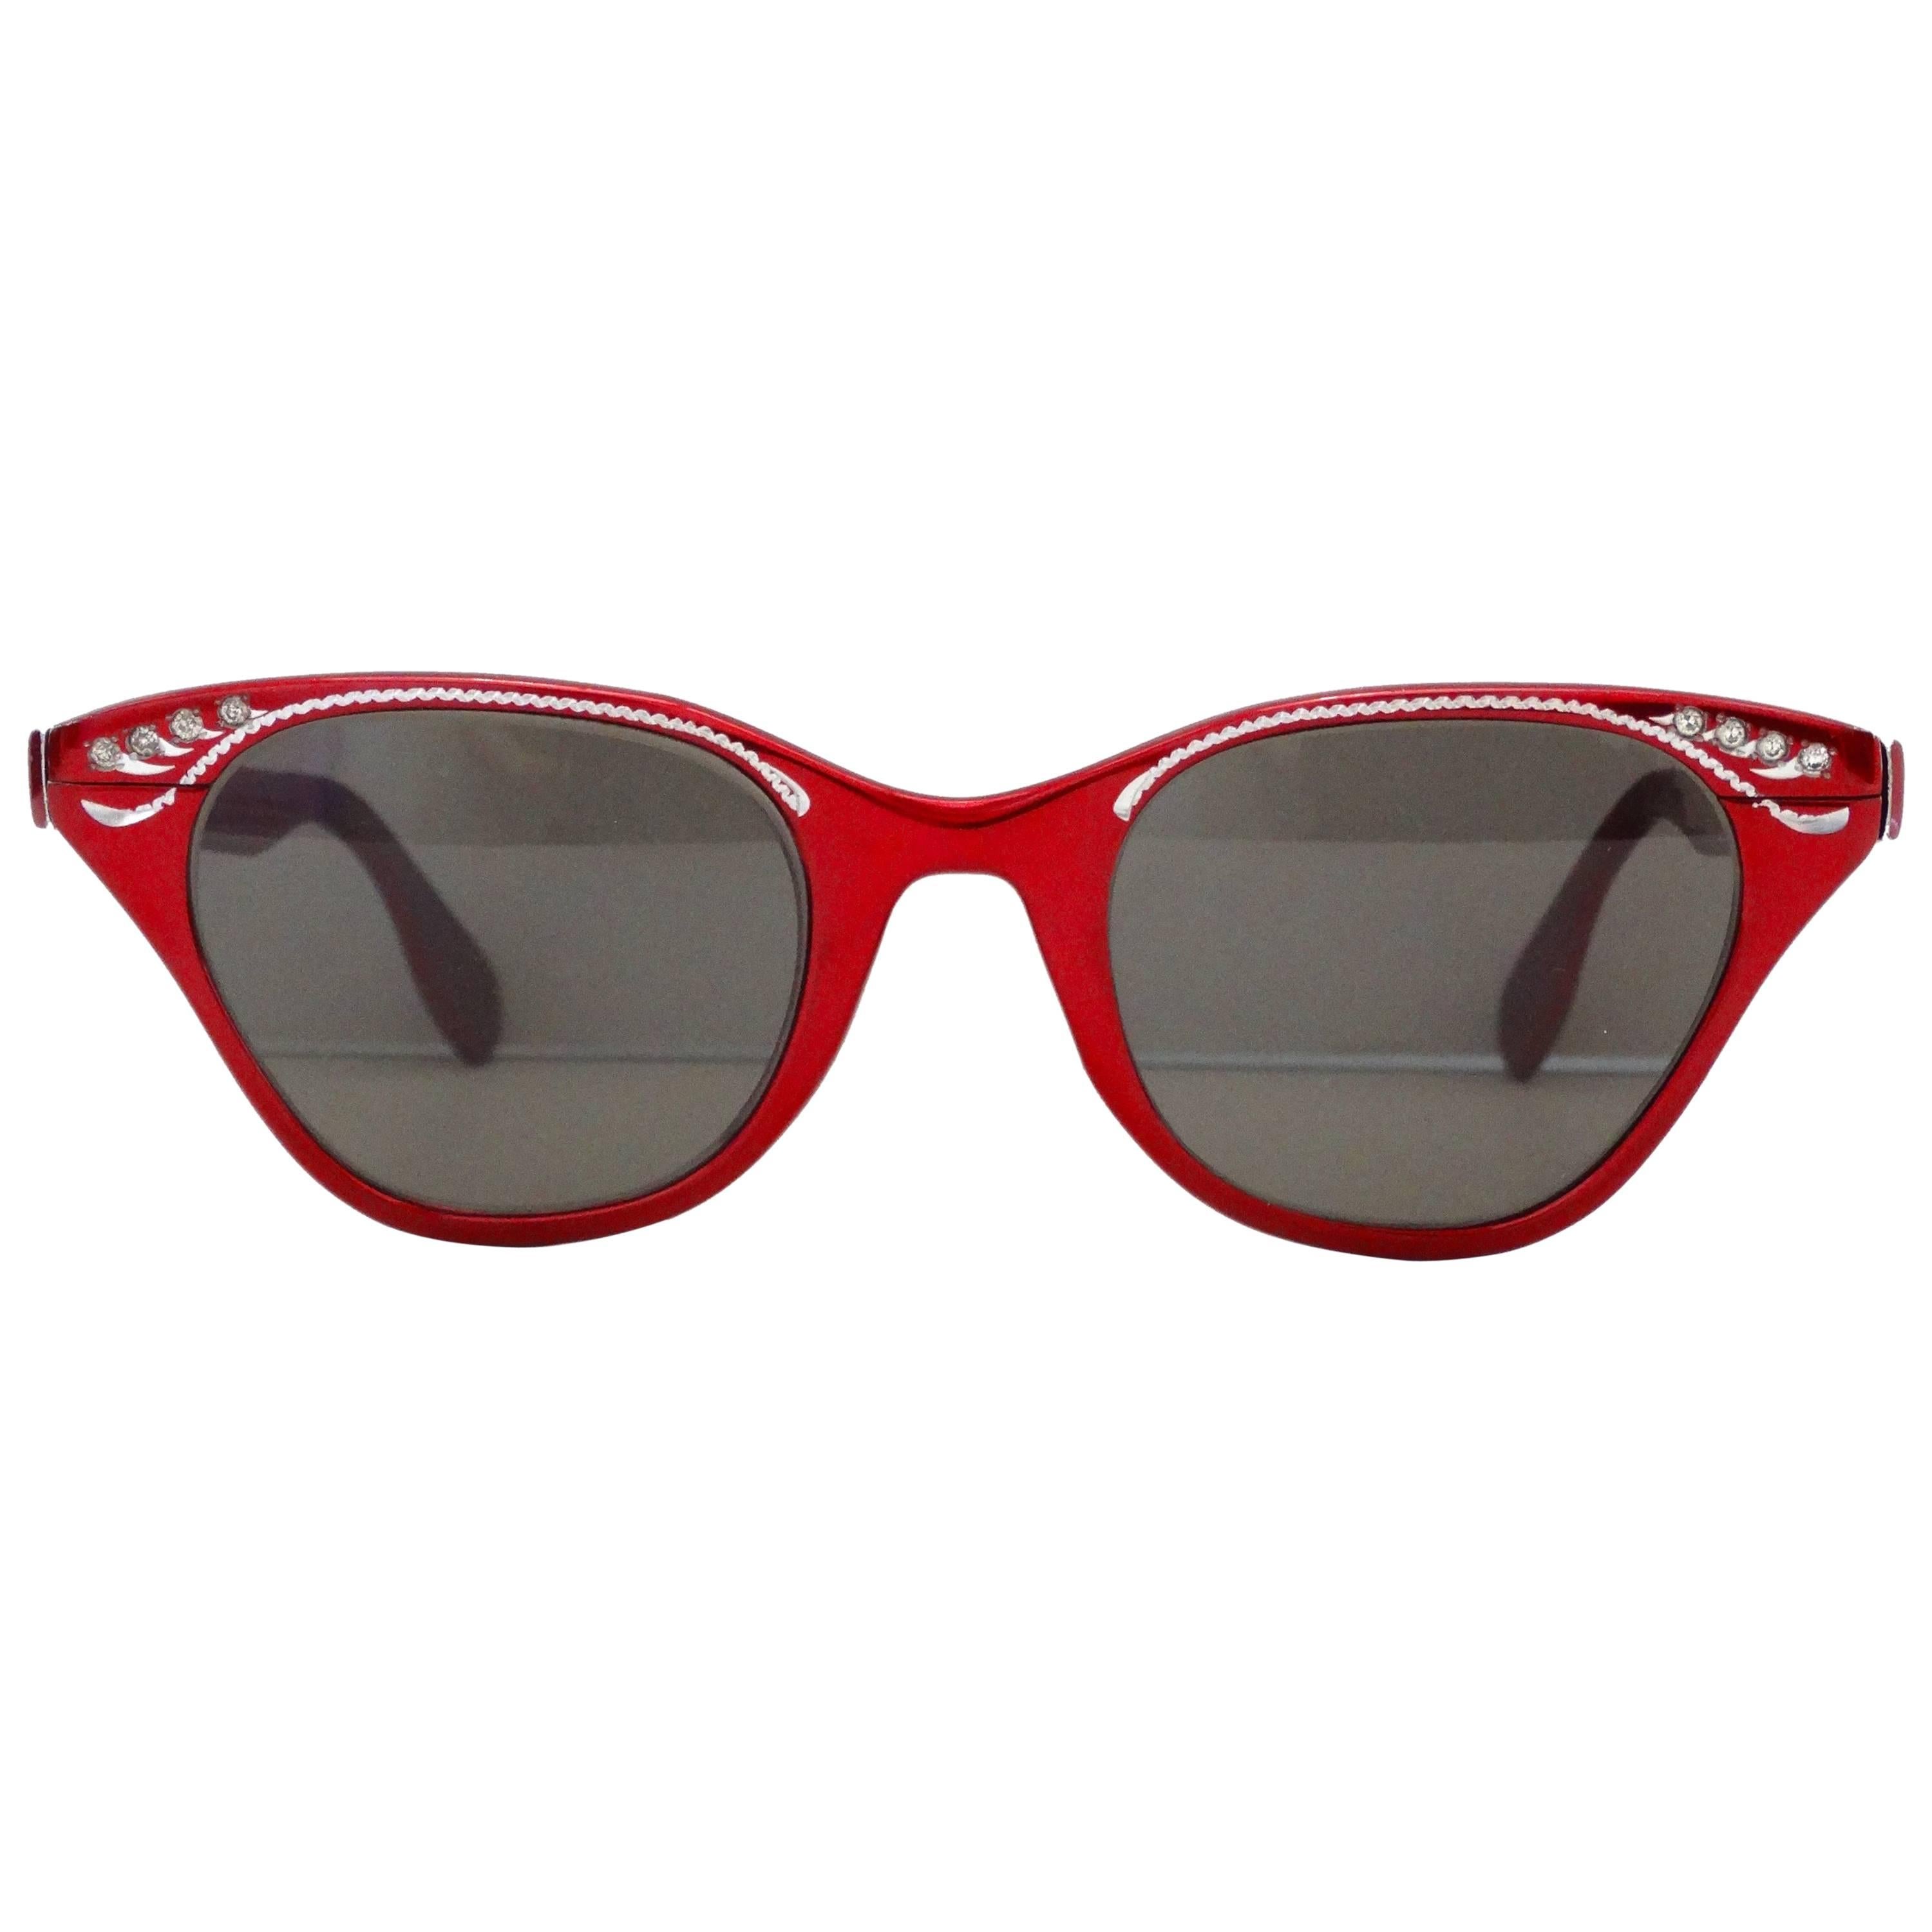 Tura Metallic Red Cat Eye Sunglasses, 1960s  